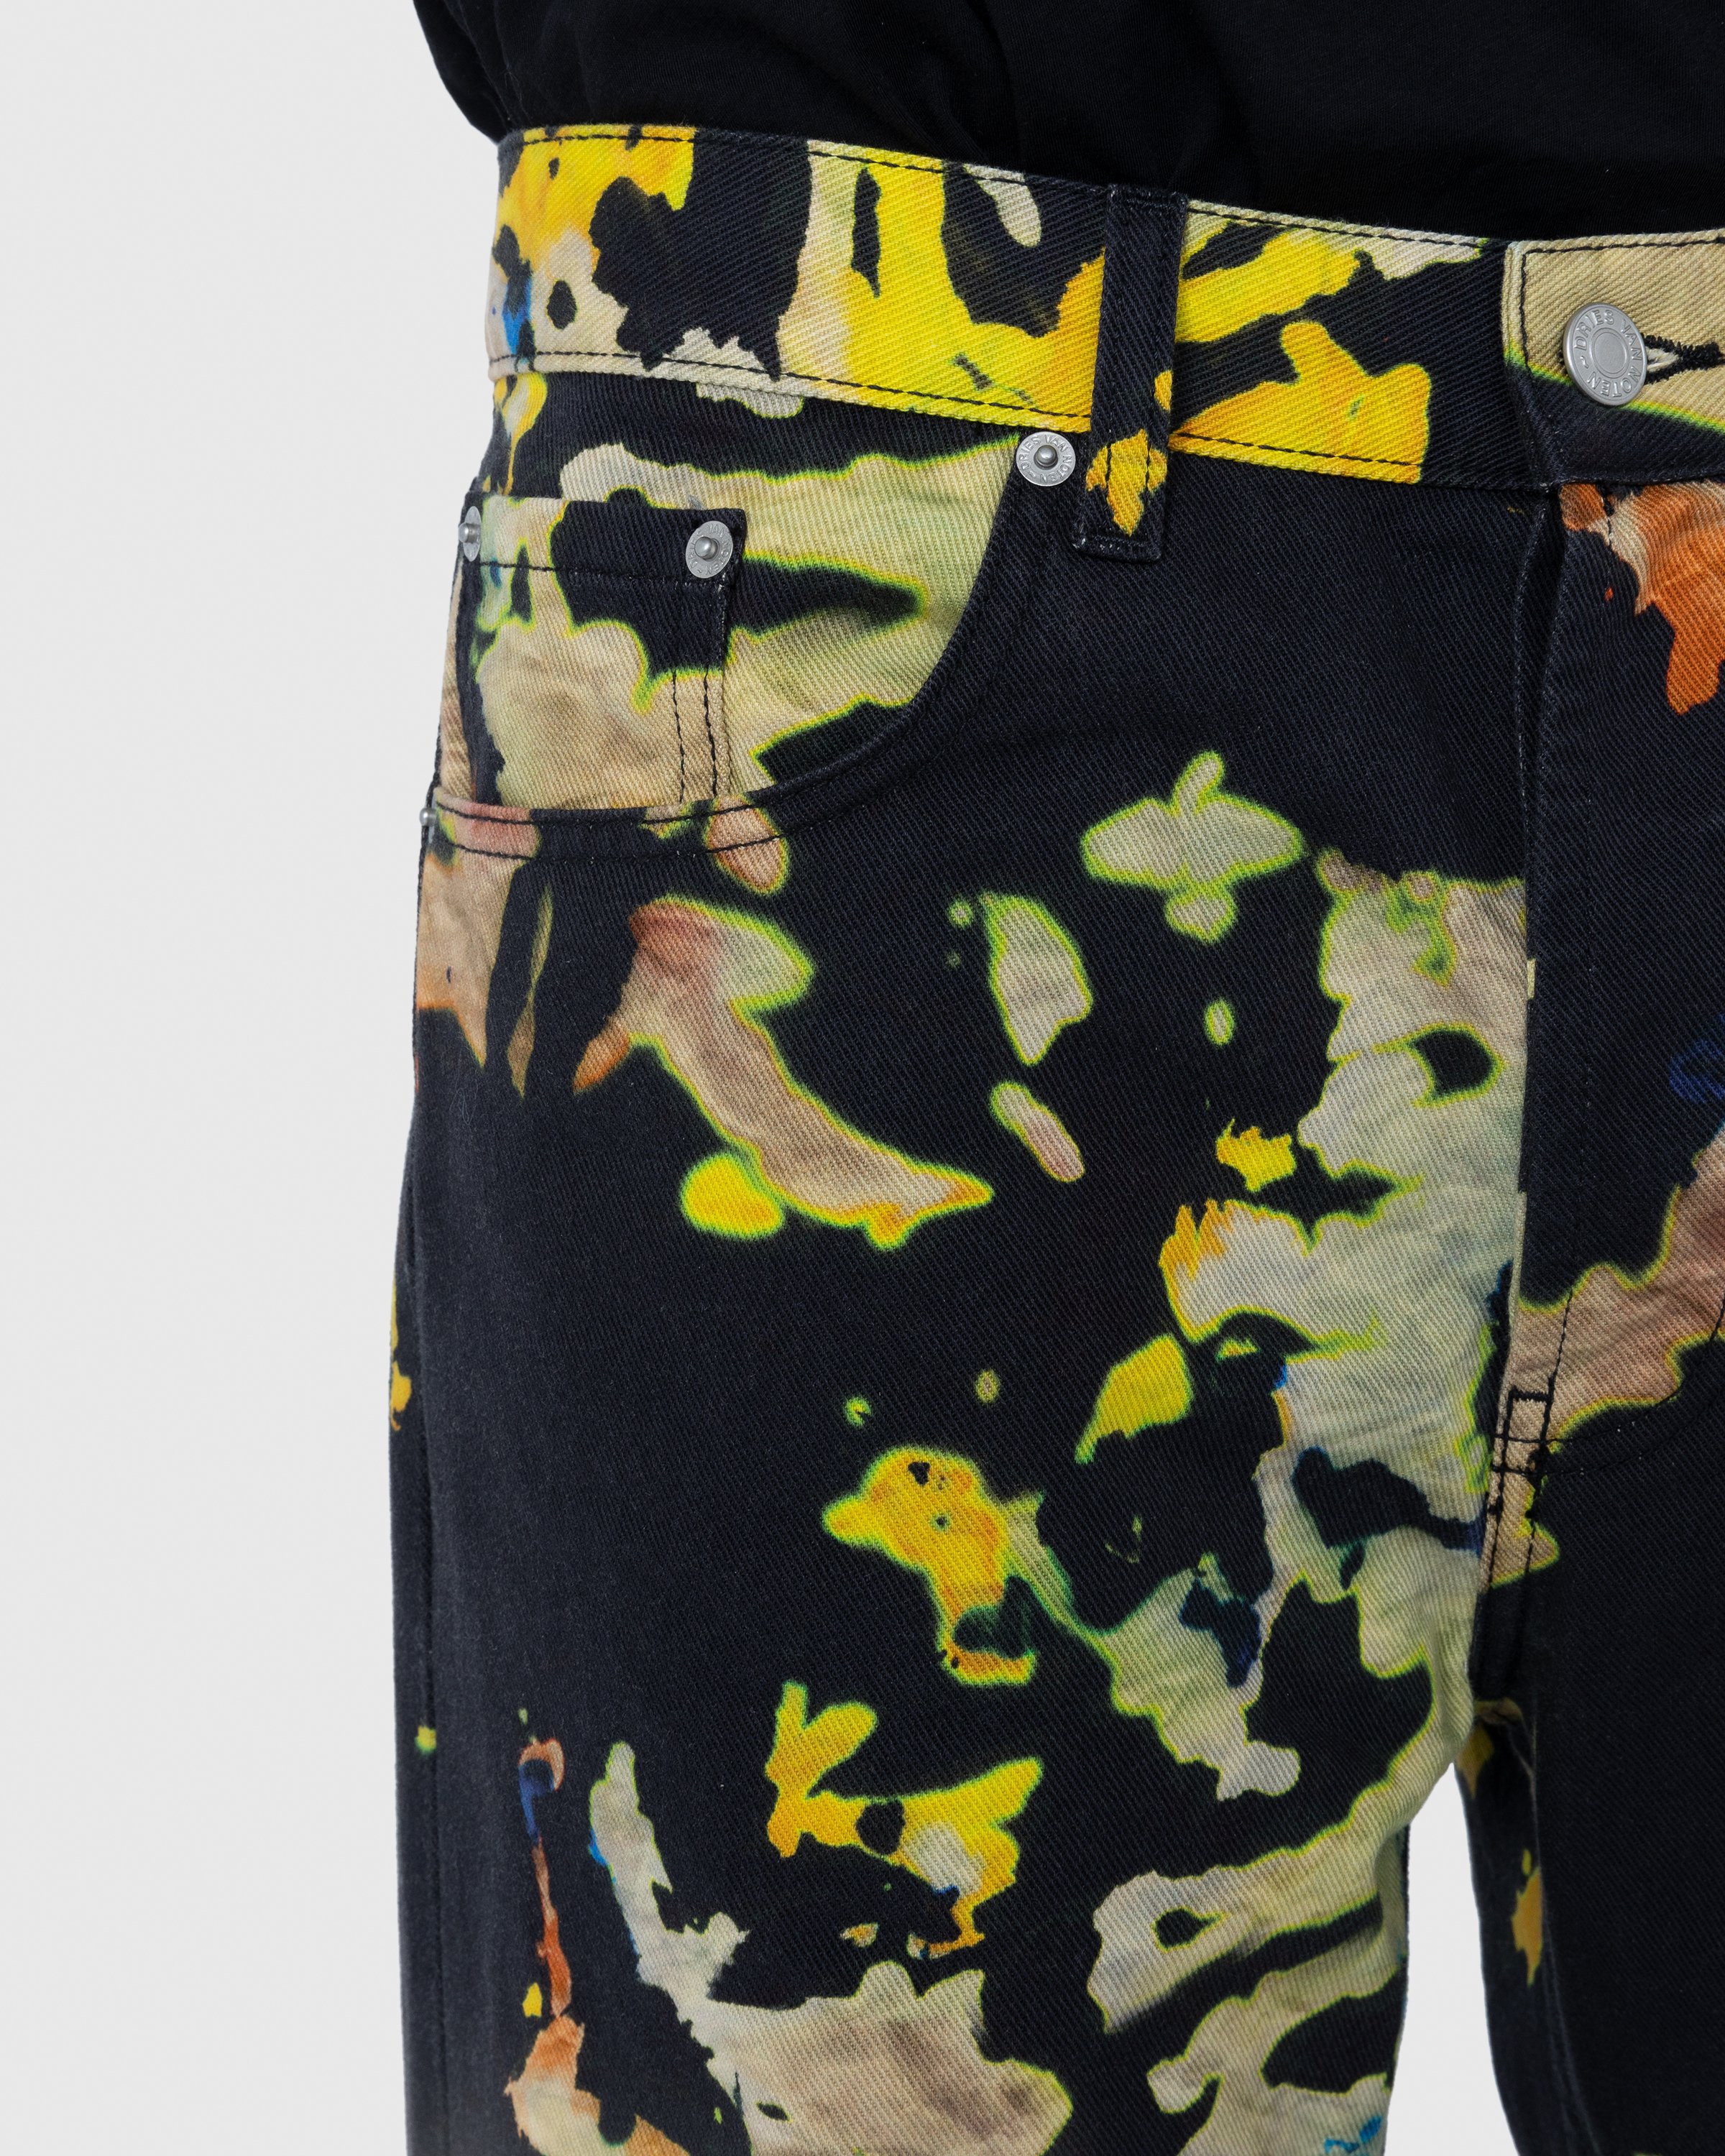 Dries van Noten - Panthero Pants - Clothing - Multi - Image 6